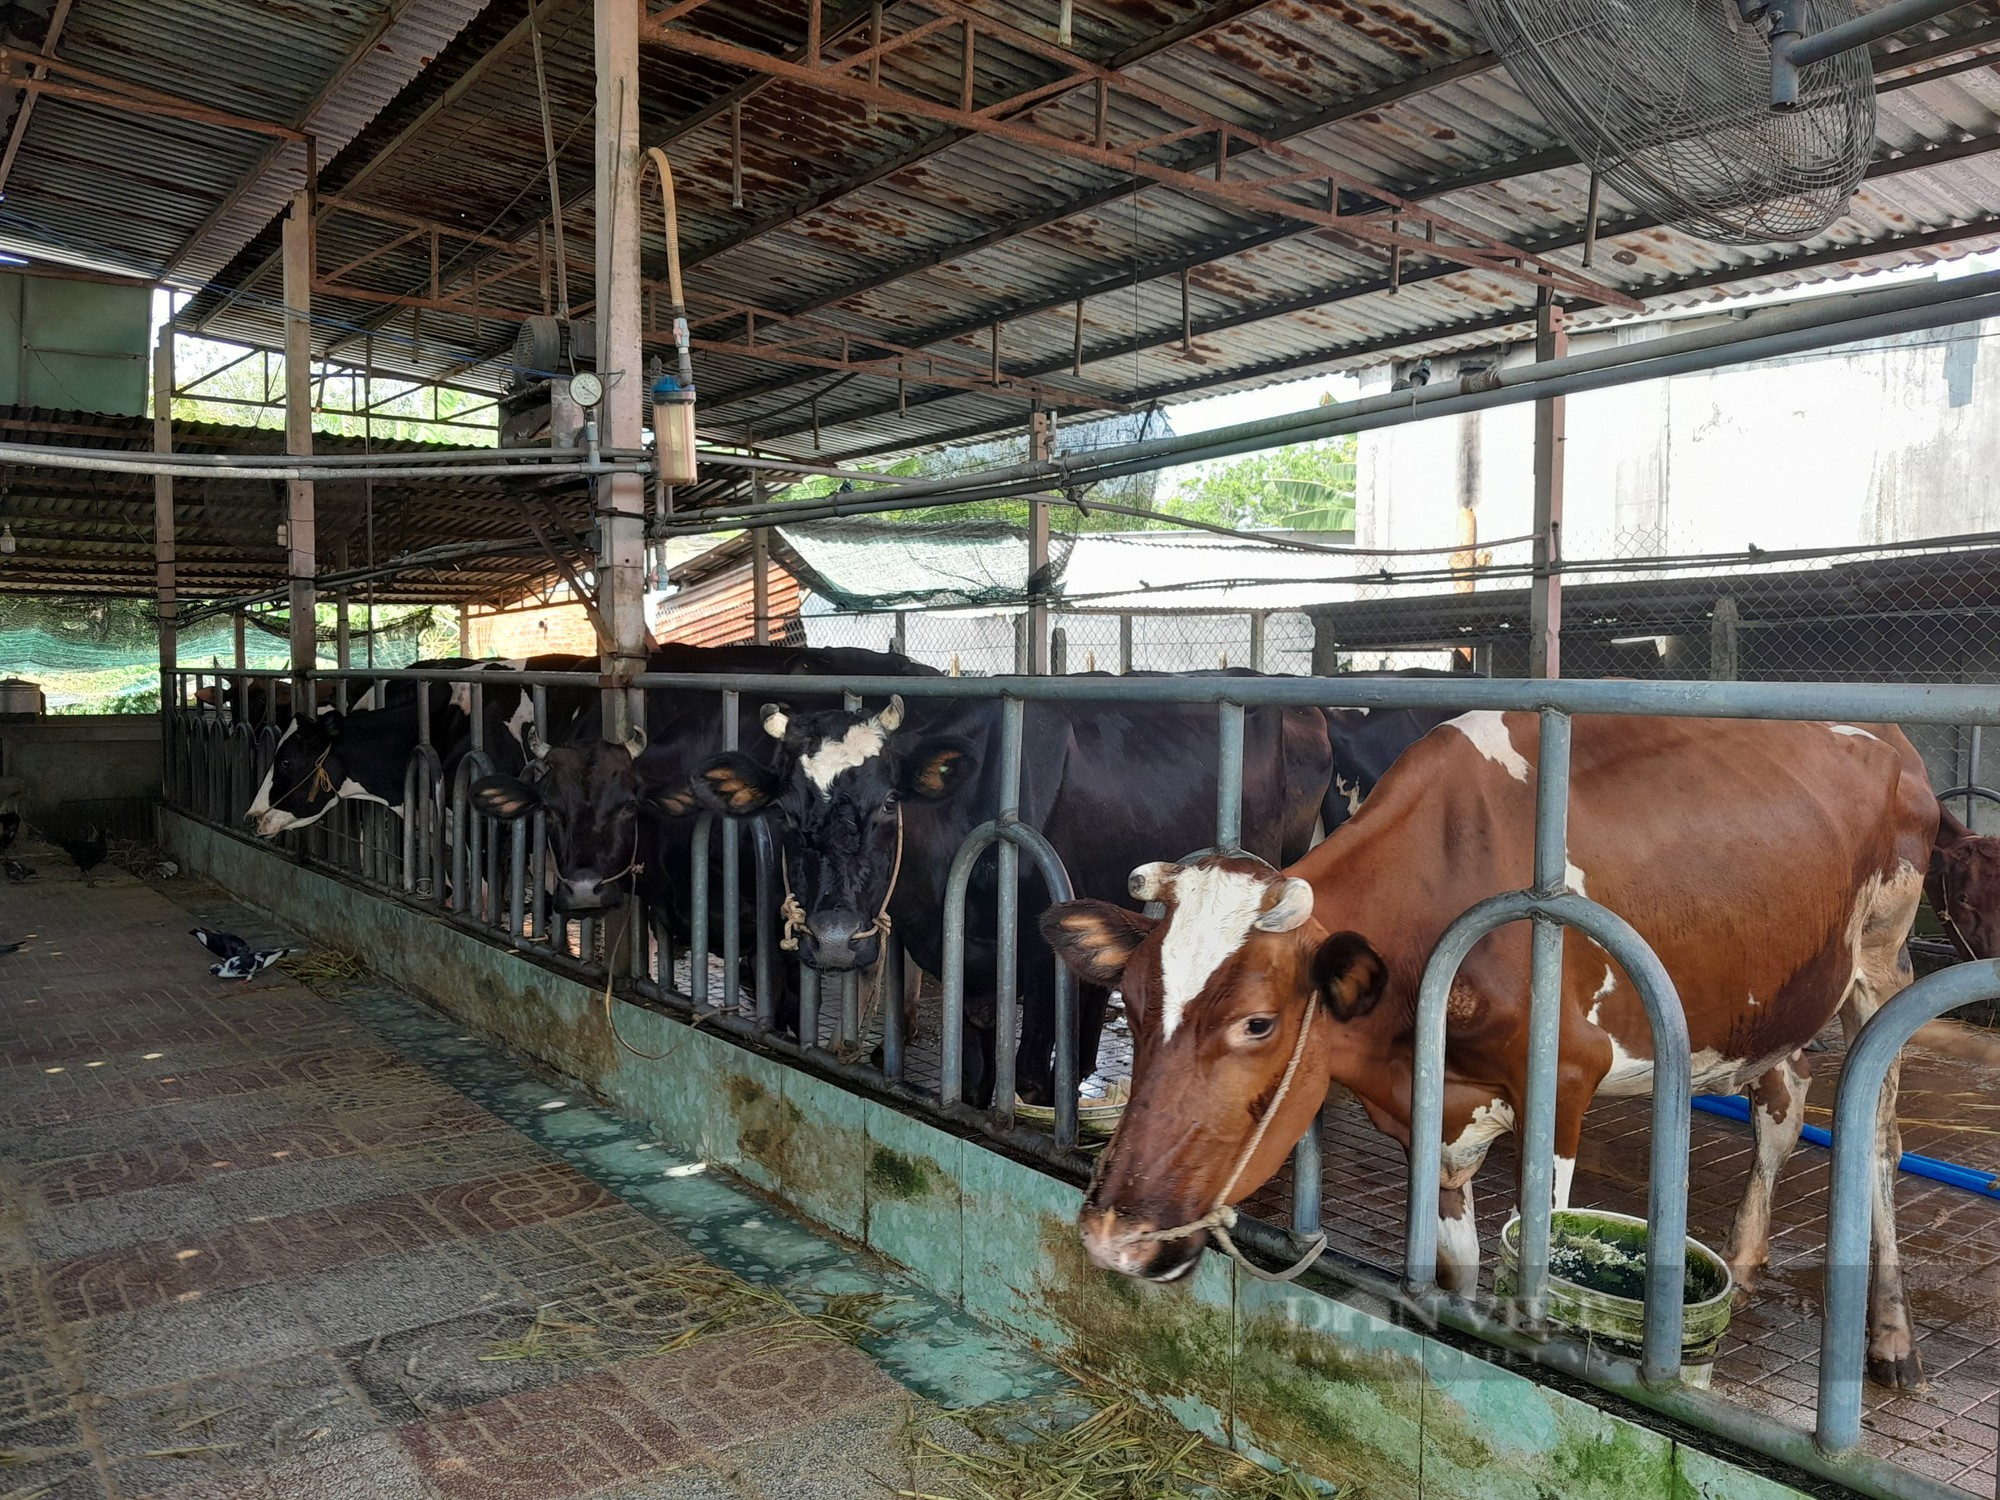 Chăn nuôi bò sữa nông hộ ở TP.HCM - bài cuối: Vì sao TP.HCM quyết tâm giữ đàn bò sữa? - Ảnh 2.